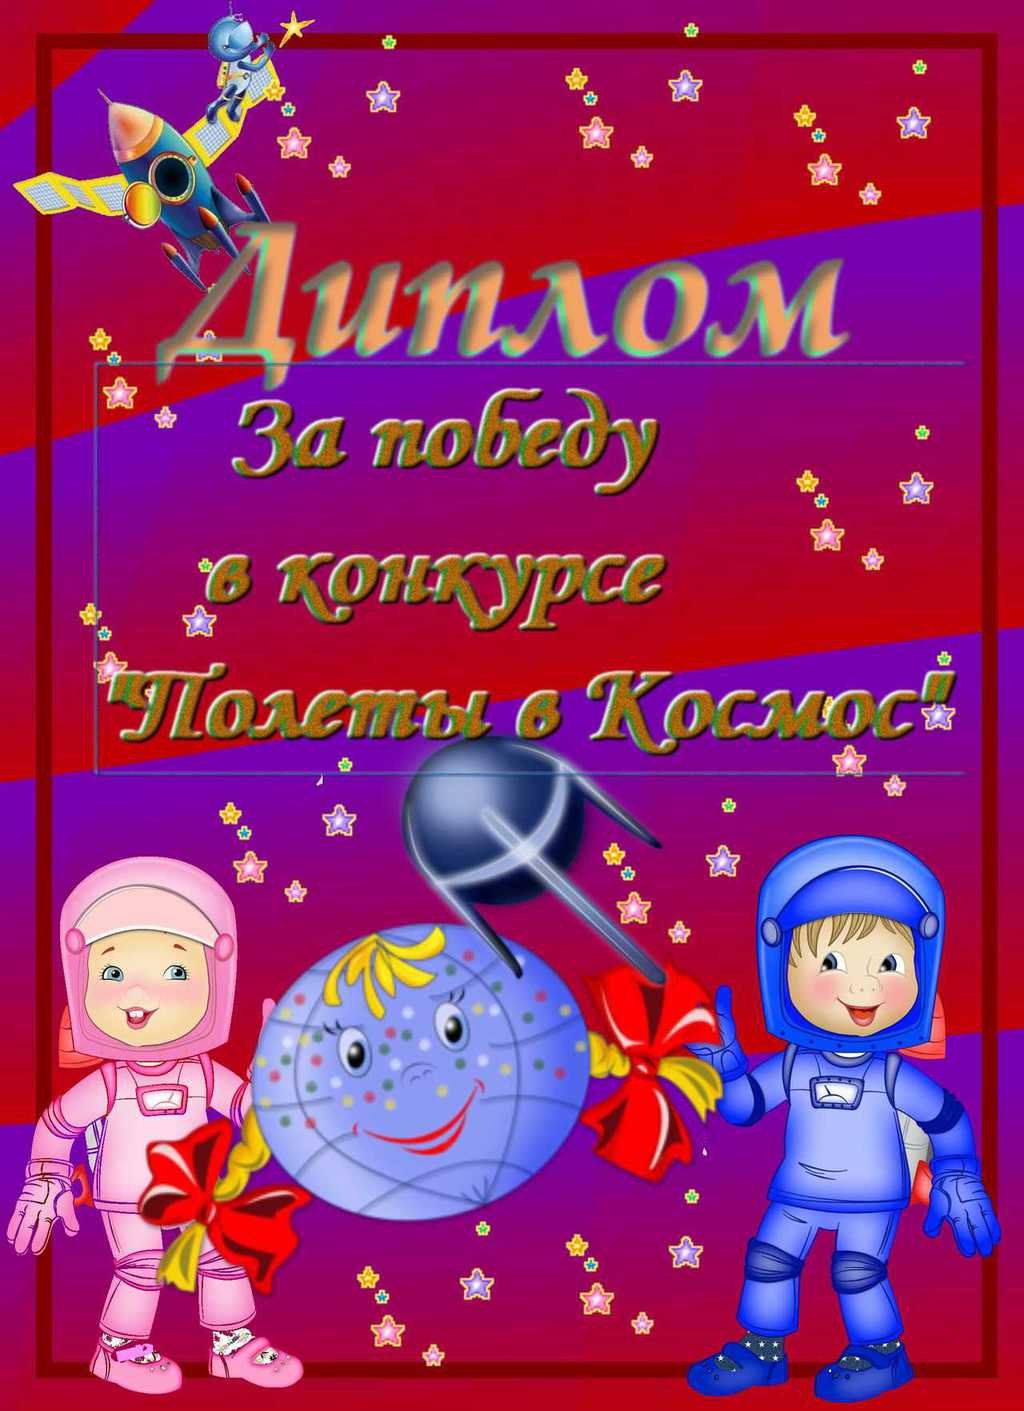 Объявление на день космонавтики. Грамота ко Дню космонавтики. Грамота ко Дню космонавтики для детей. Грамота космос для детей.